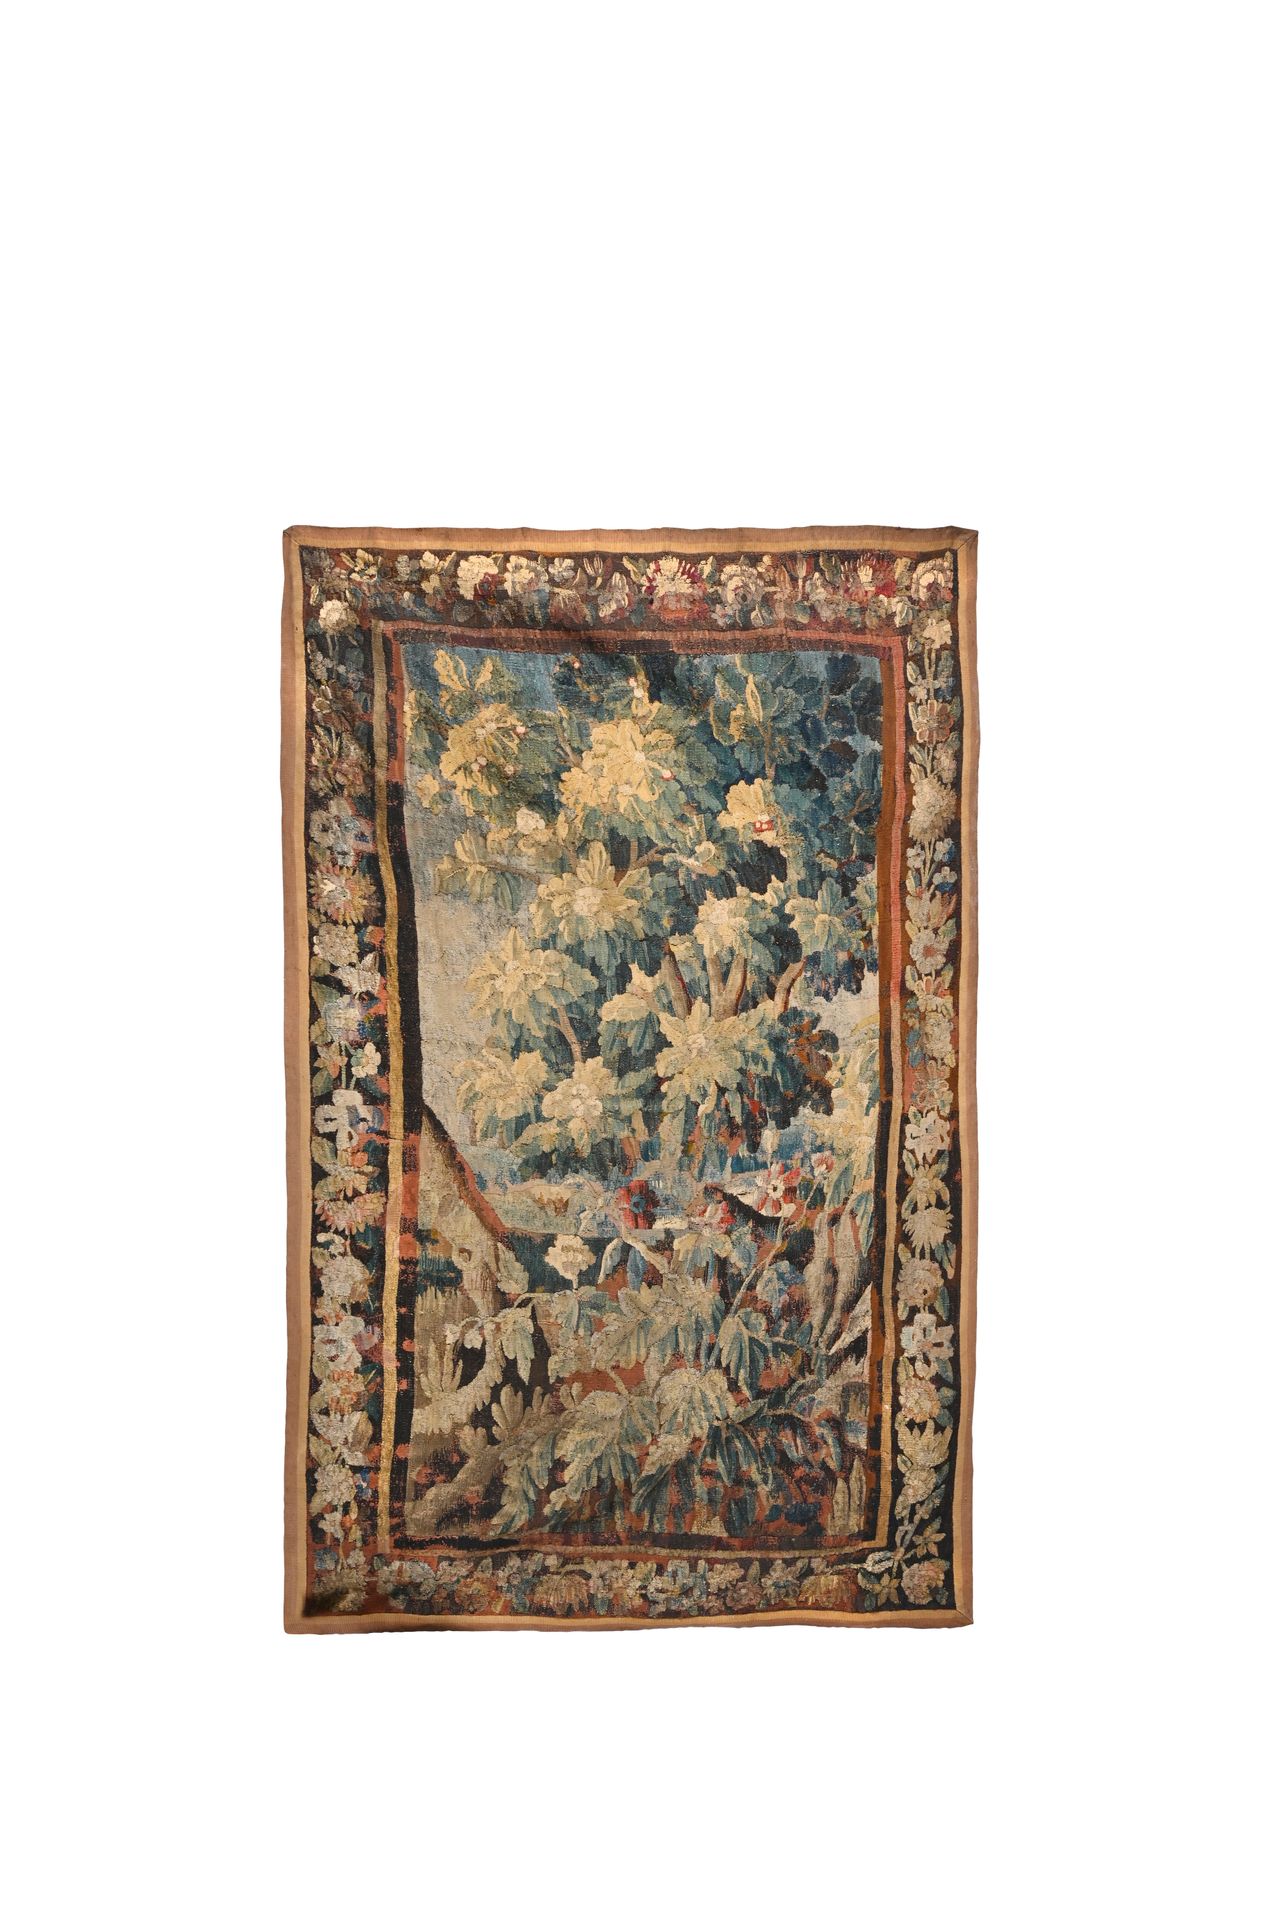 AUBUSSON Portière à décor de verdure

Début XVIIIème siècle

l. 254 cm - L. 157
&hellip;